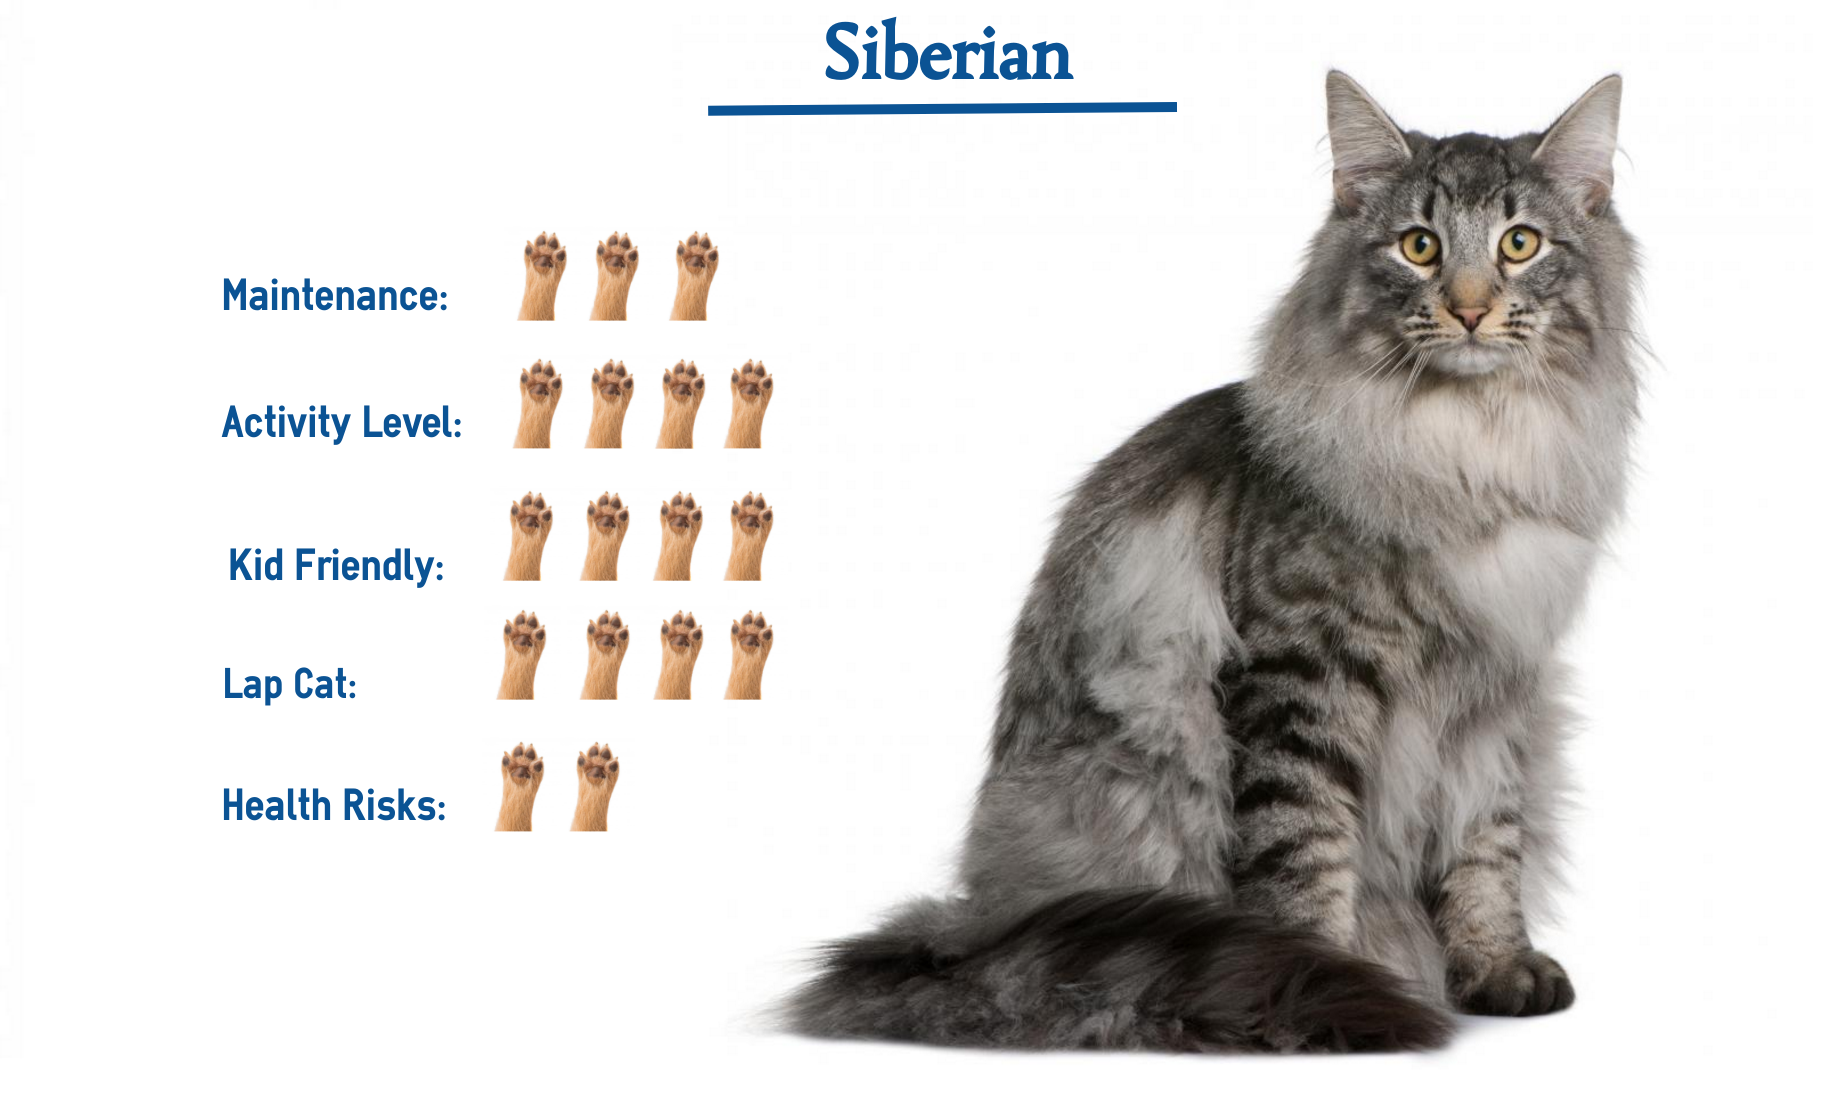 Вес рост кошки. Сибирская кошка Размеры и вес. Сибирская кошка вес в 2 месяца. Мейн кун Сибирский кот вес. Сибирский кот Размеры и вес.